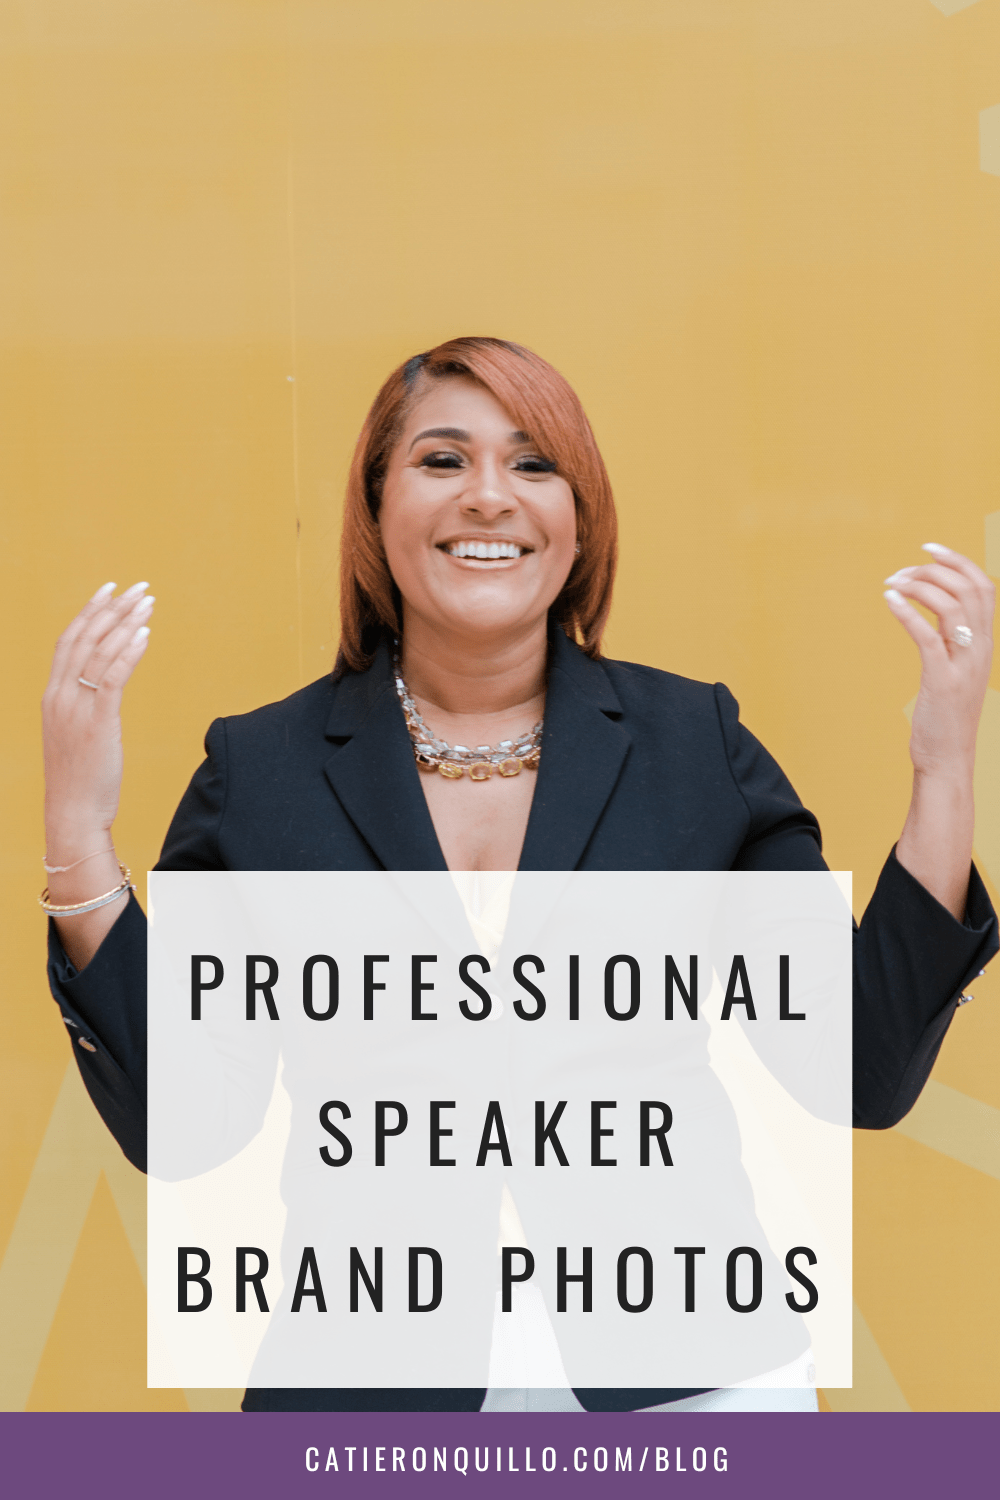 Branding Photos for professional speaker